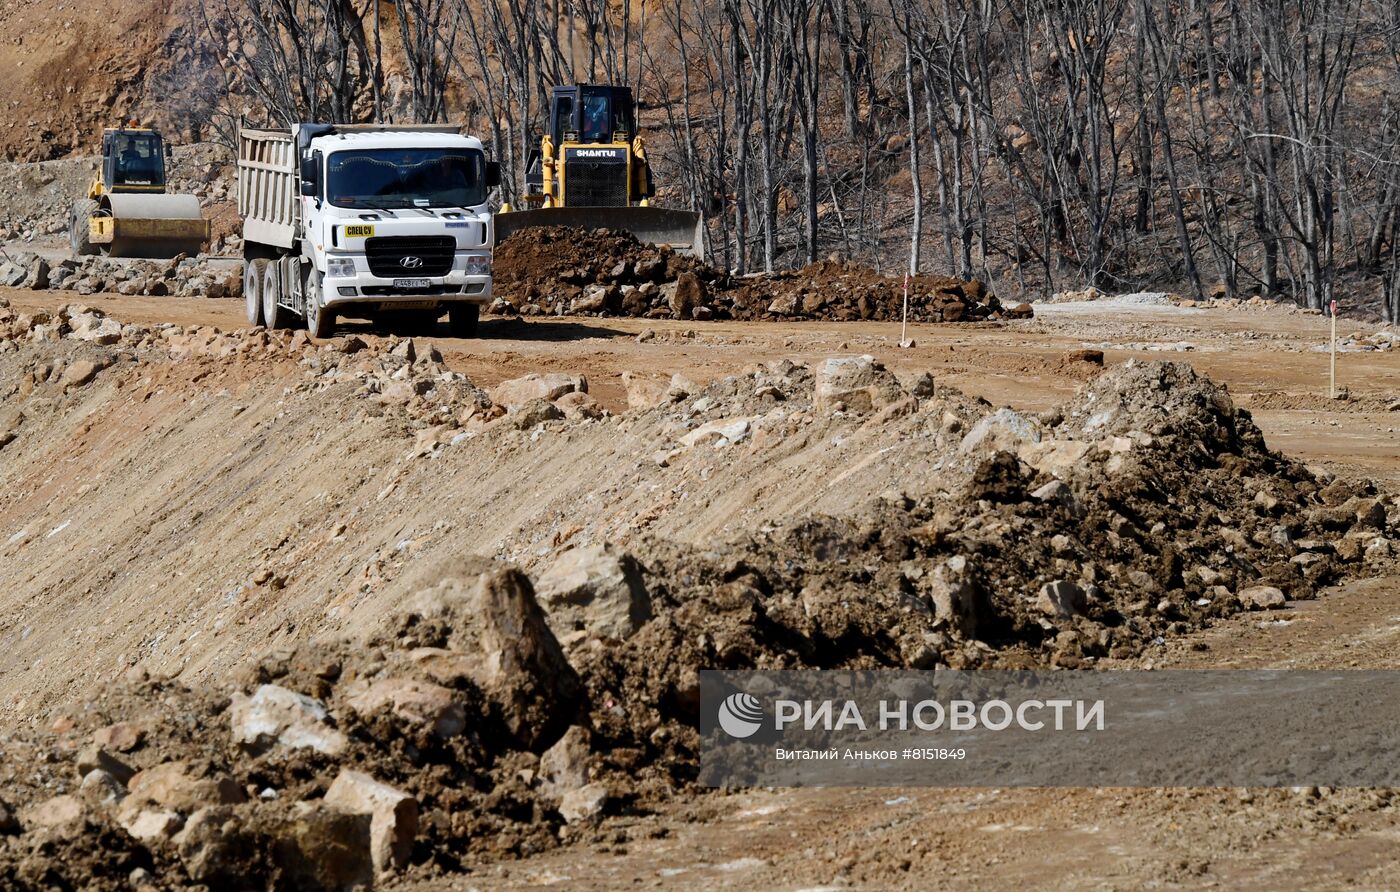 Строительство транспортной инфраструктуры в Приморском крае